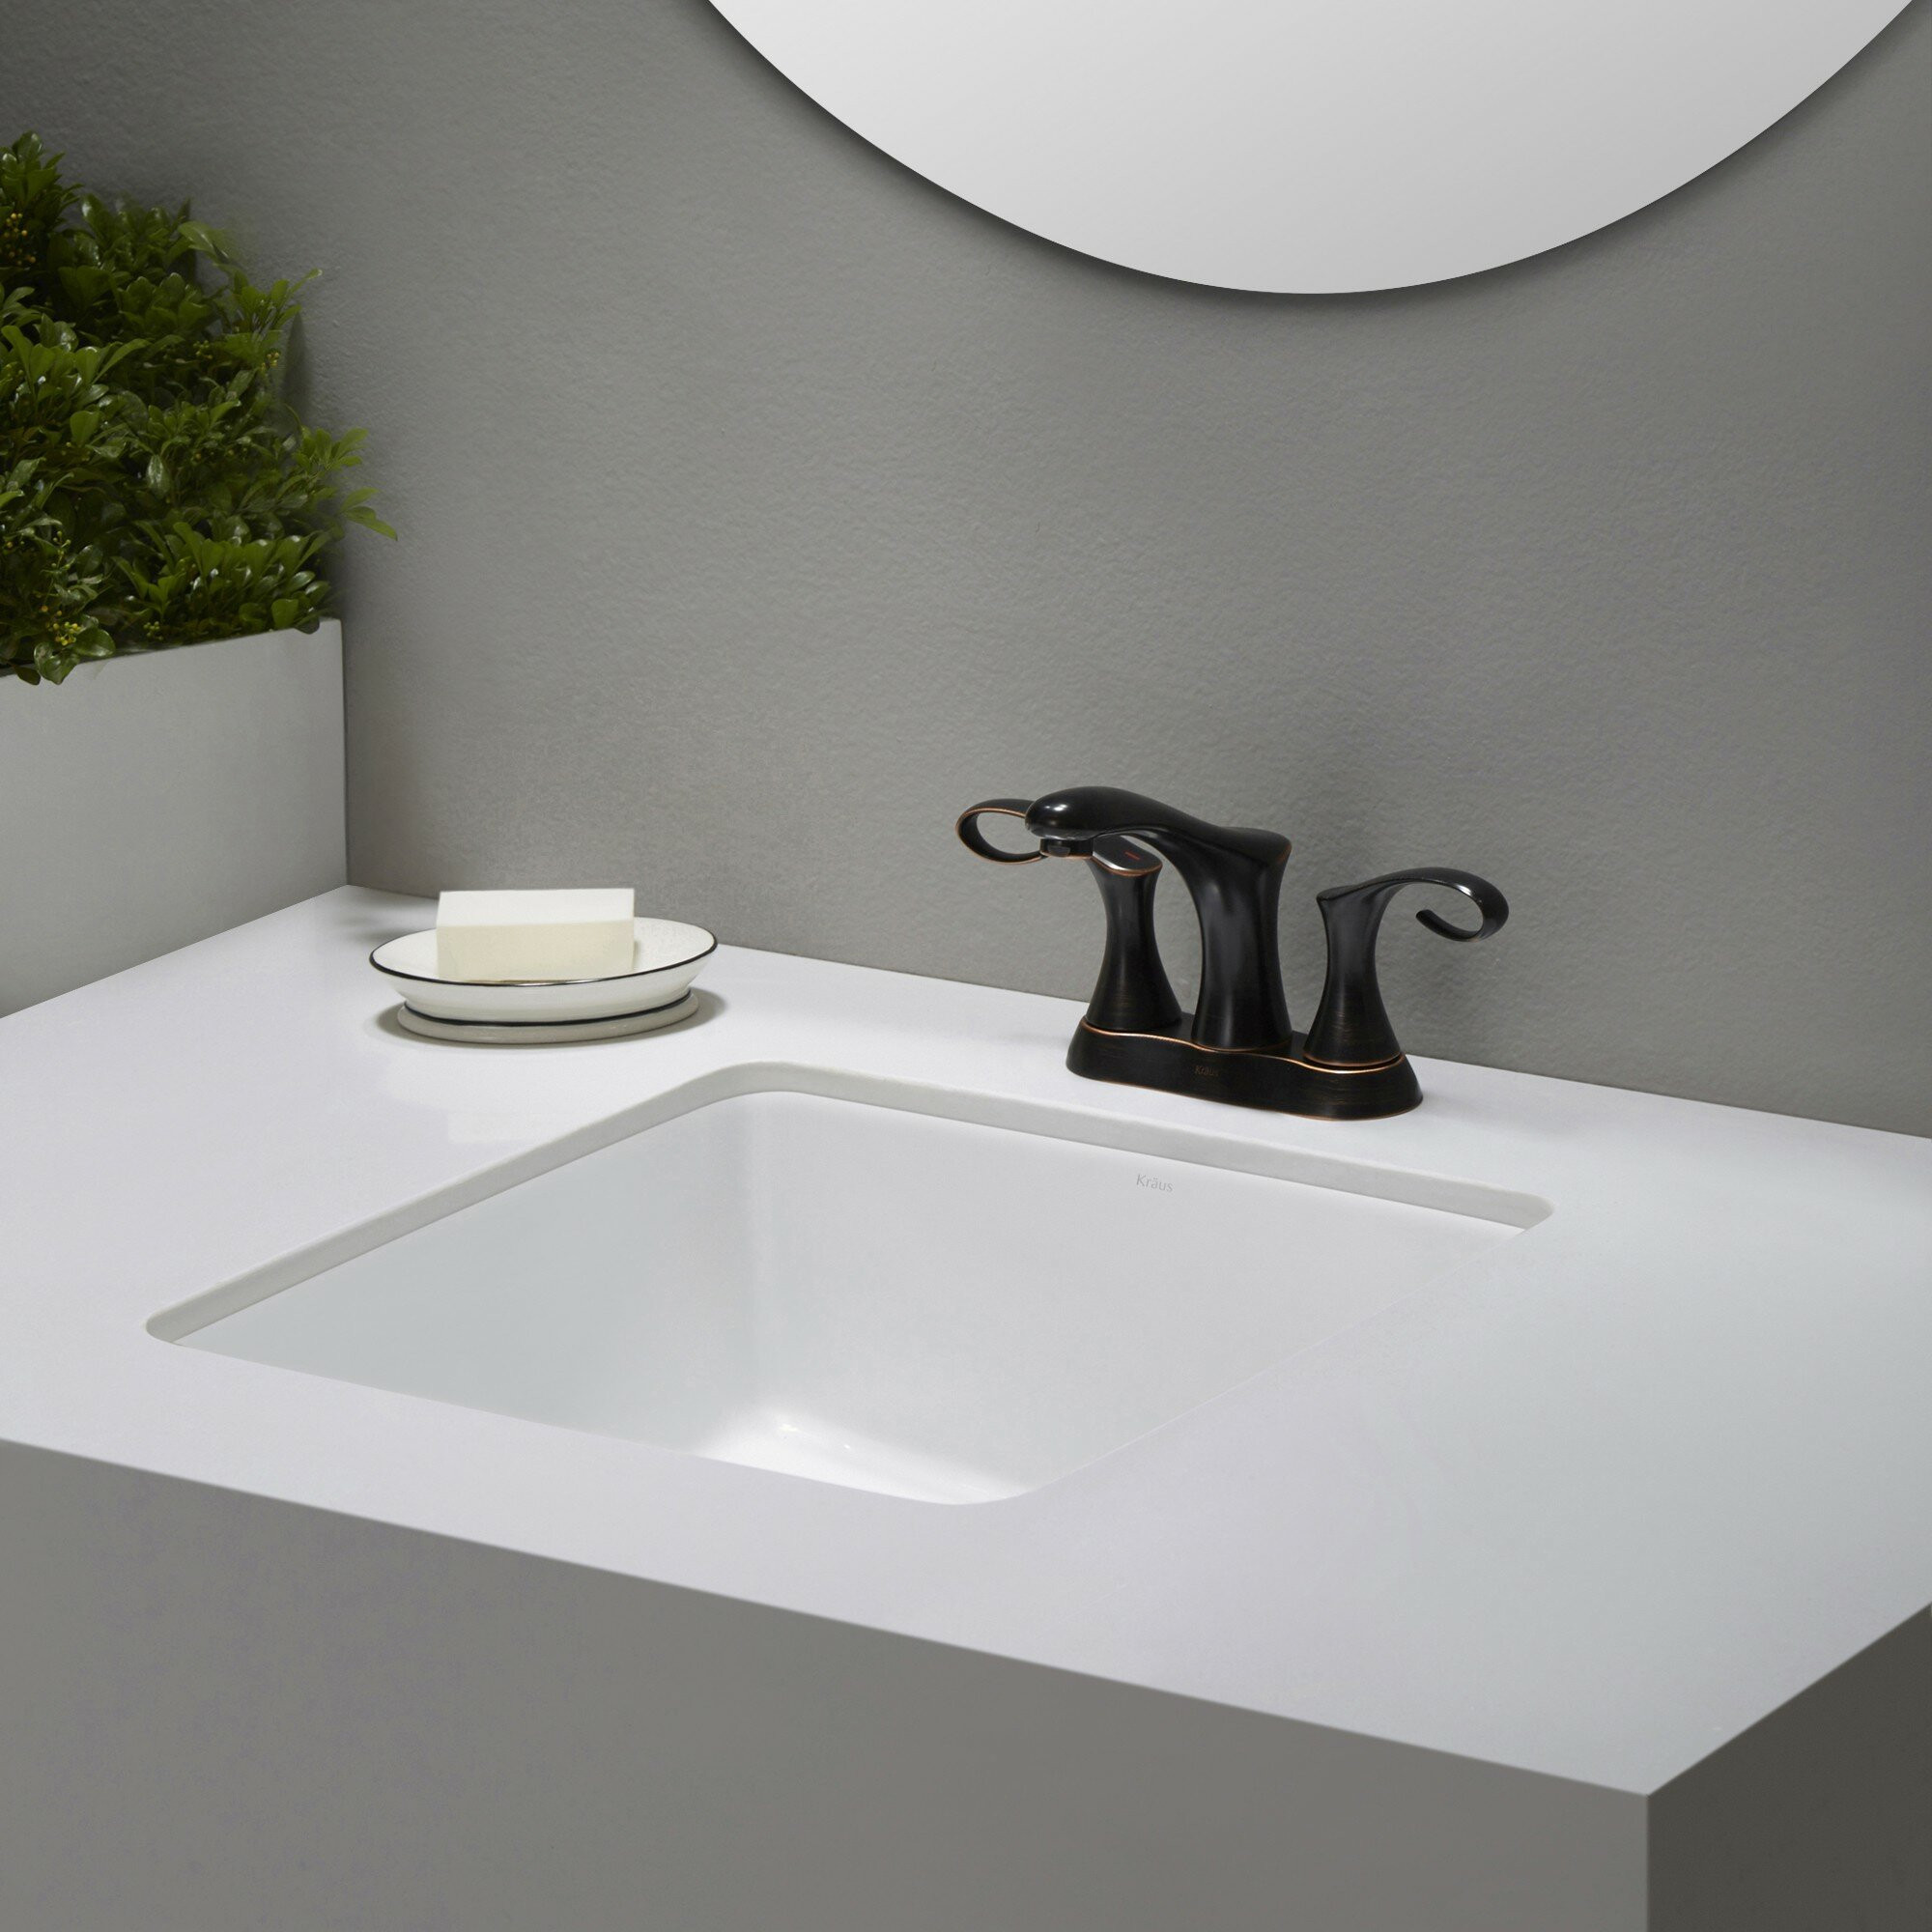 Square Undermount Bathroom Sink
 Elavo™ Ceramic Square Undermount Bathroom Sink with